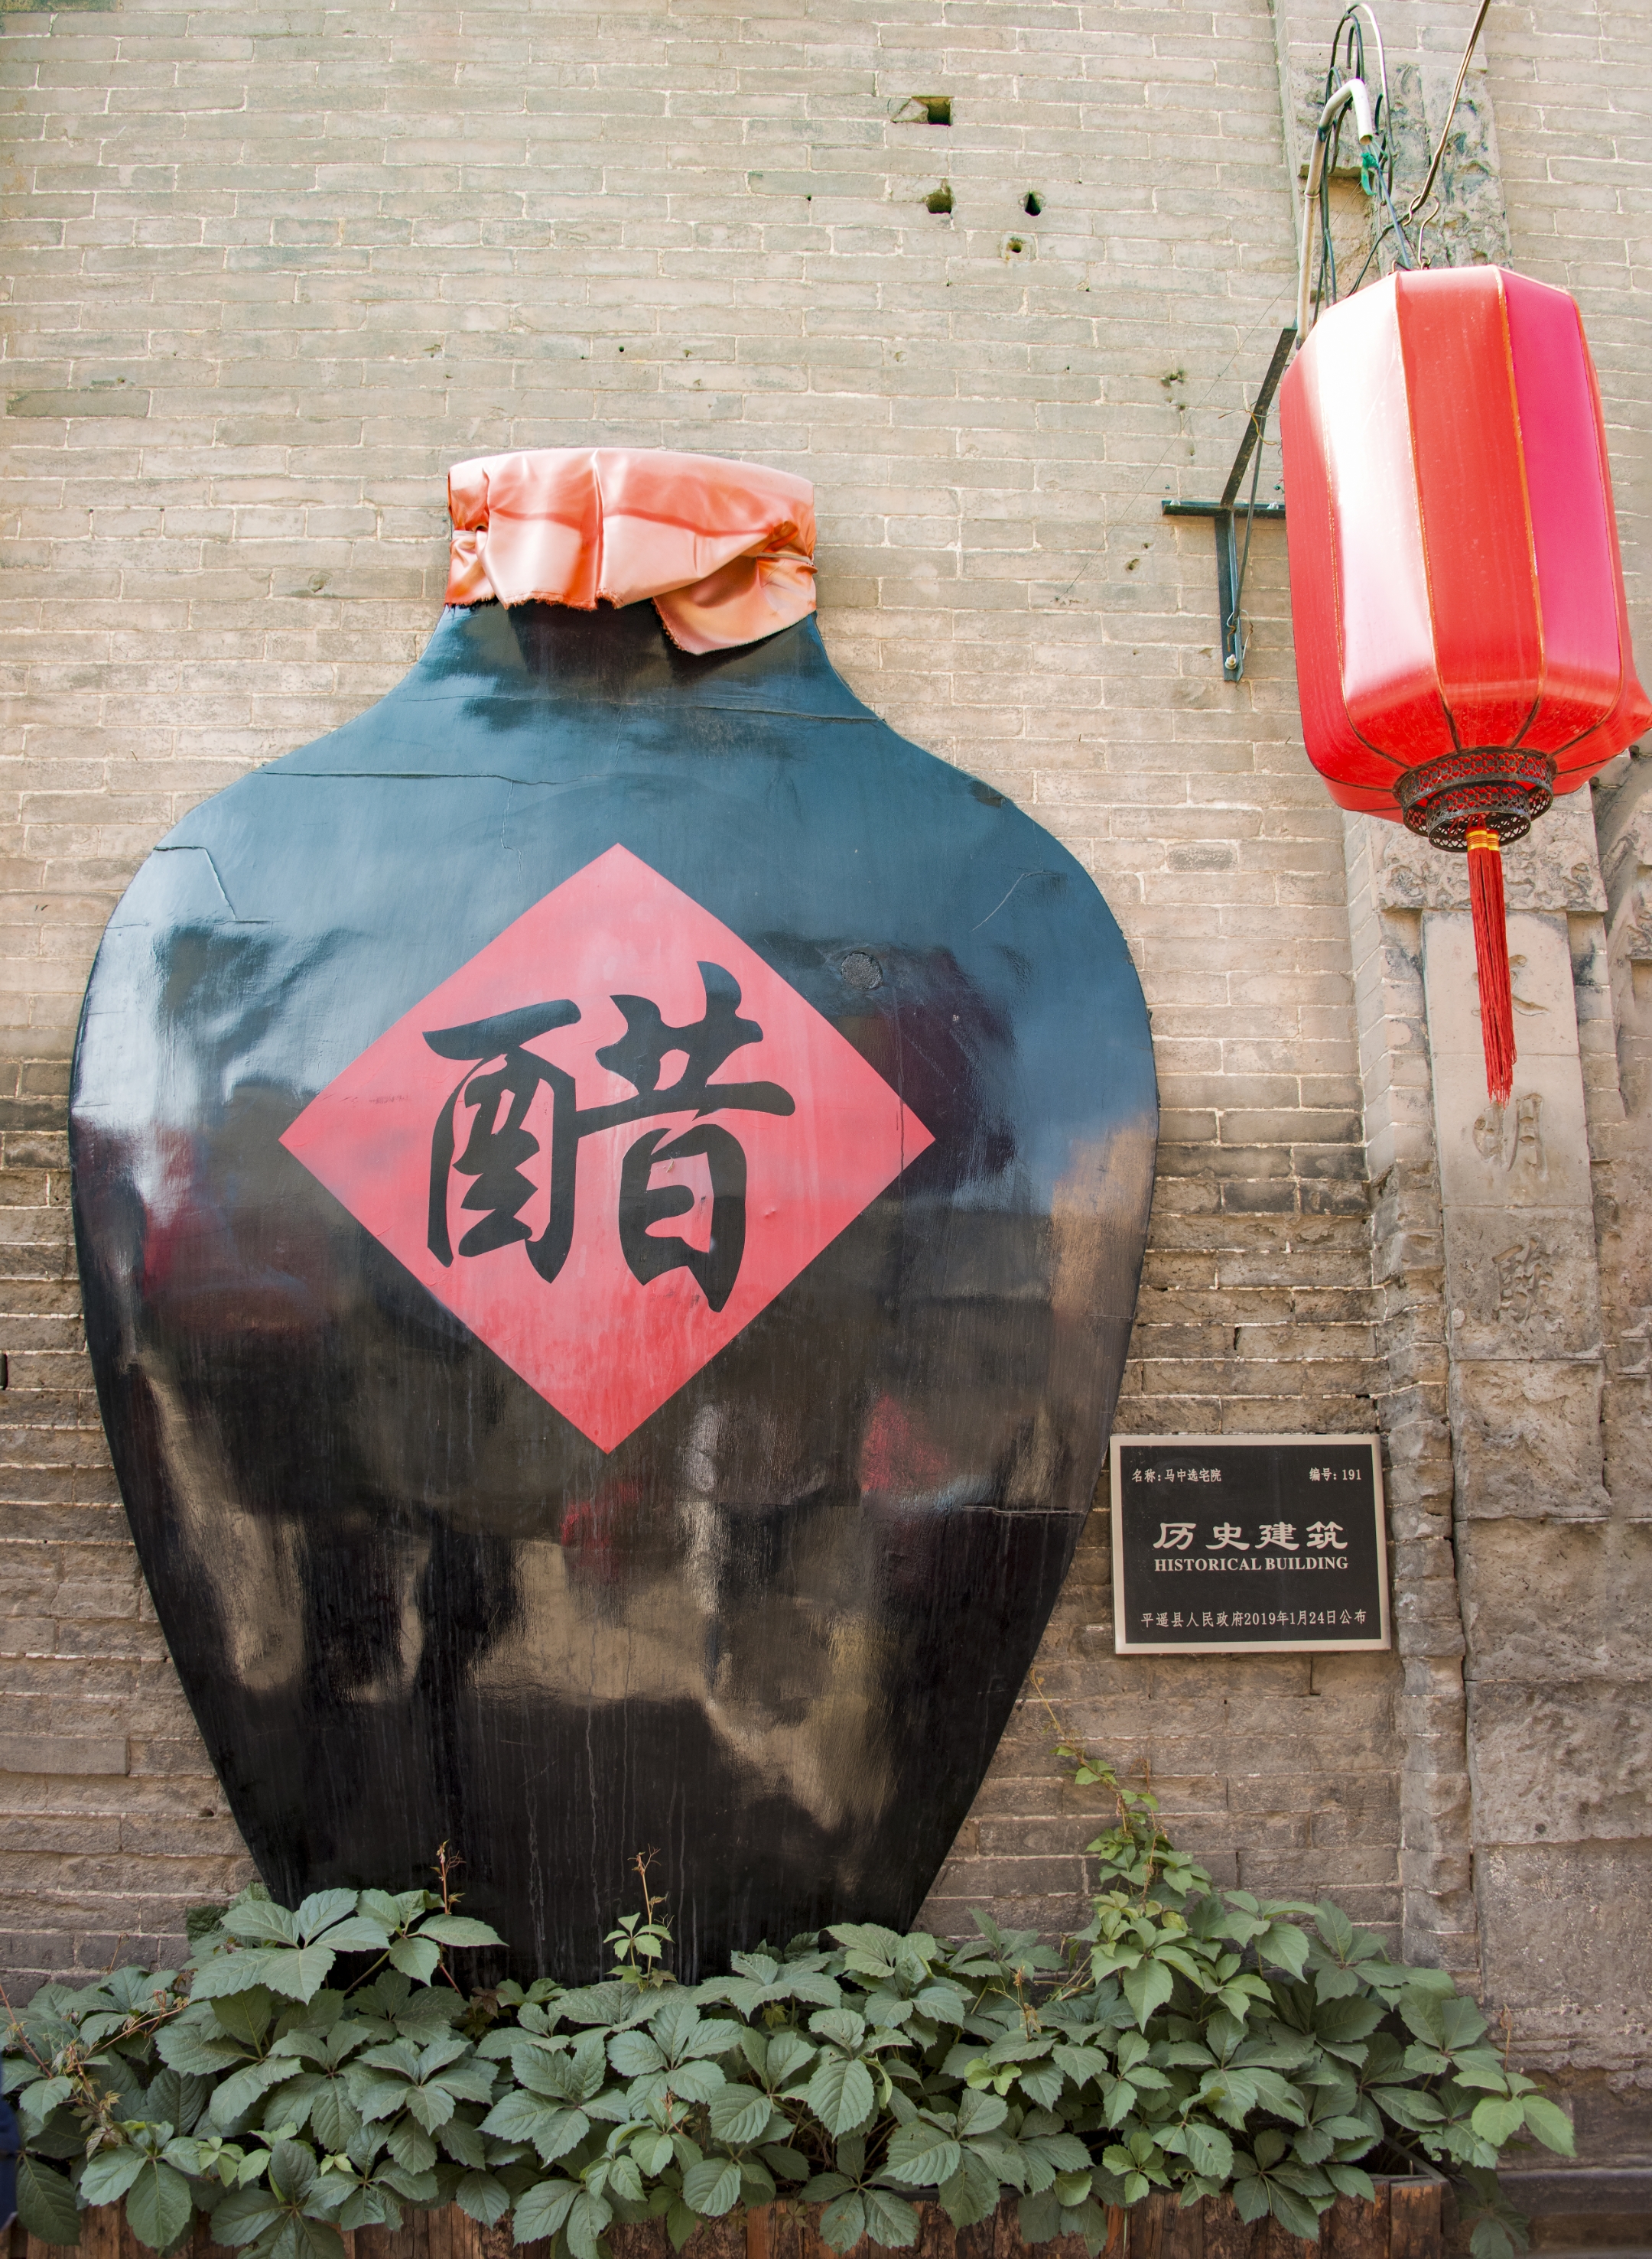 山西老陈醋是中国四大名醋之一,已有3000余年的历史,素有"天下第